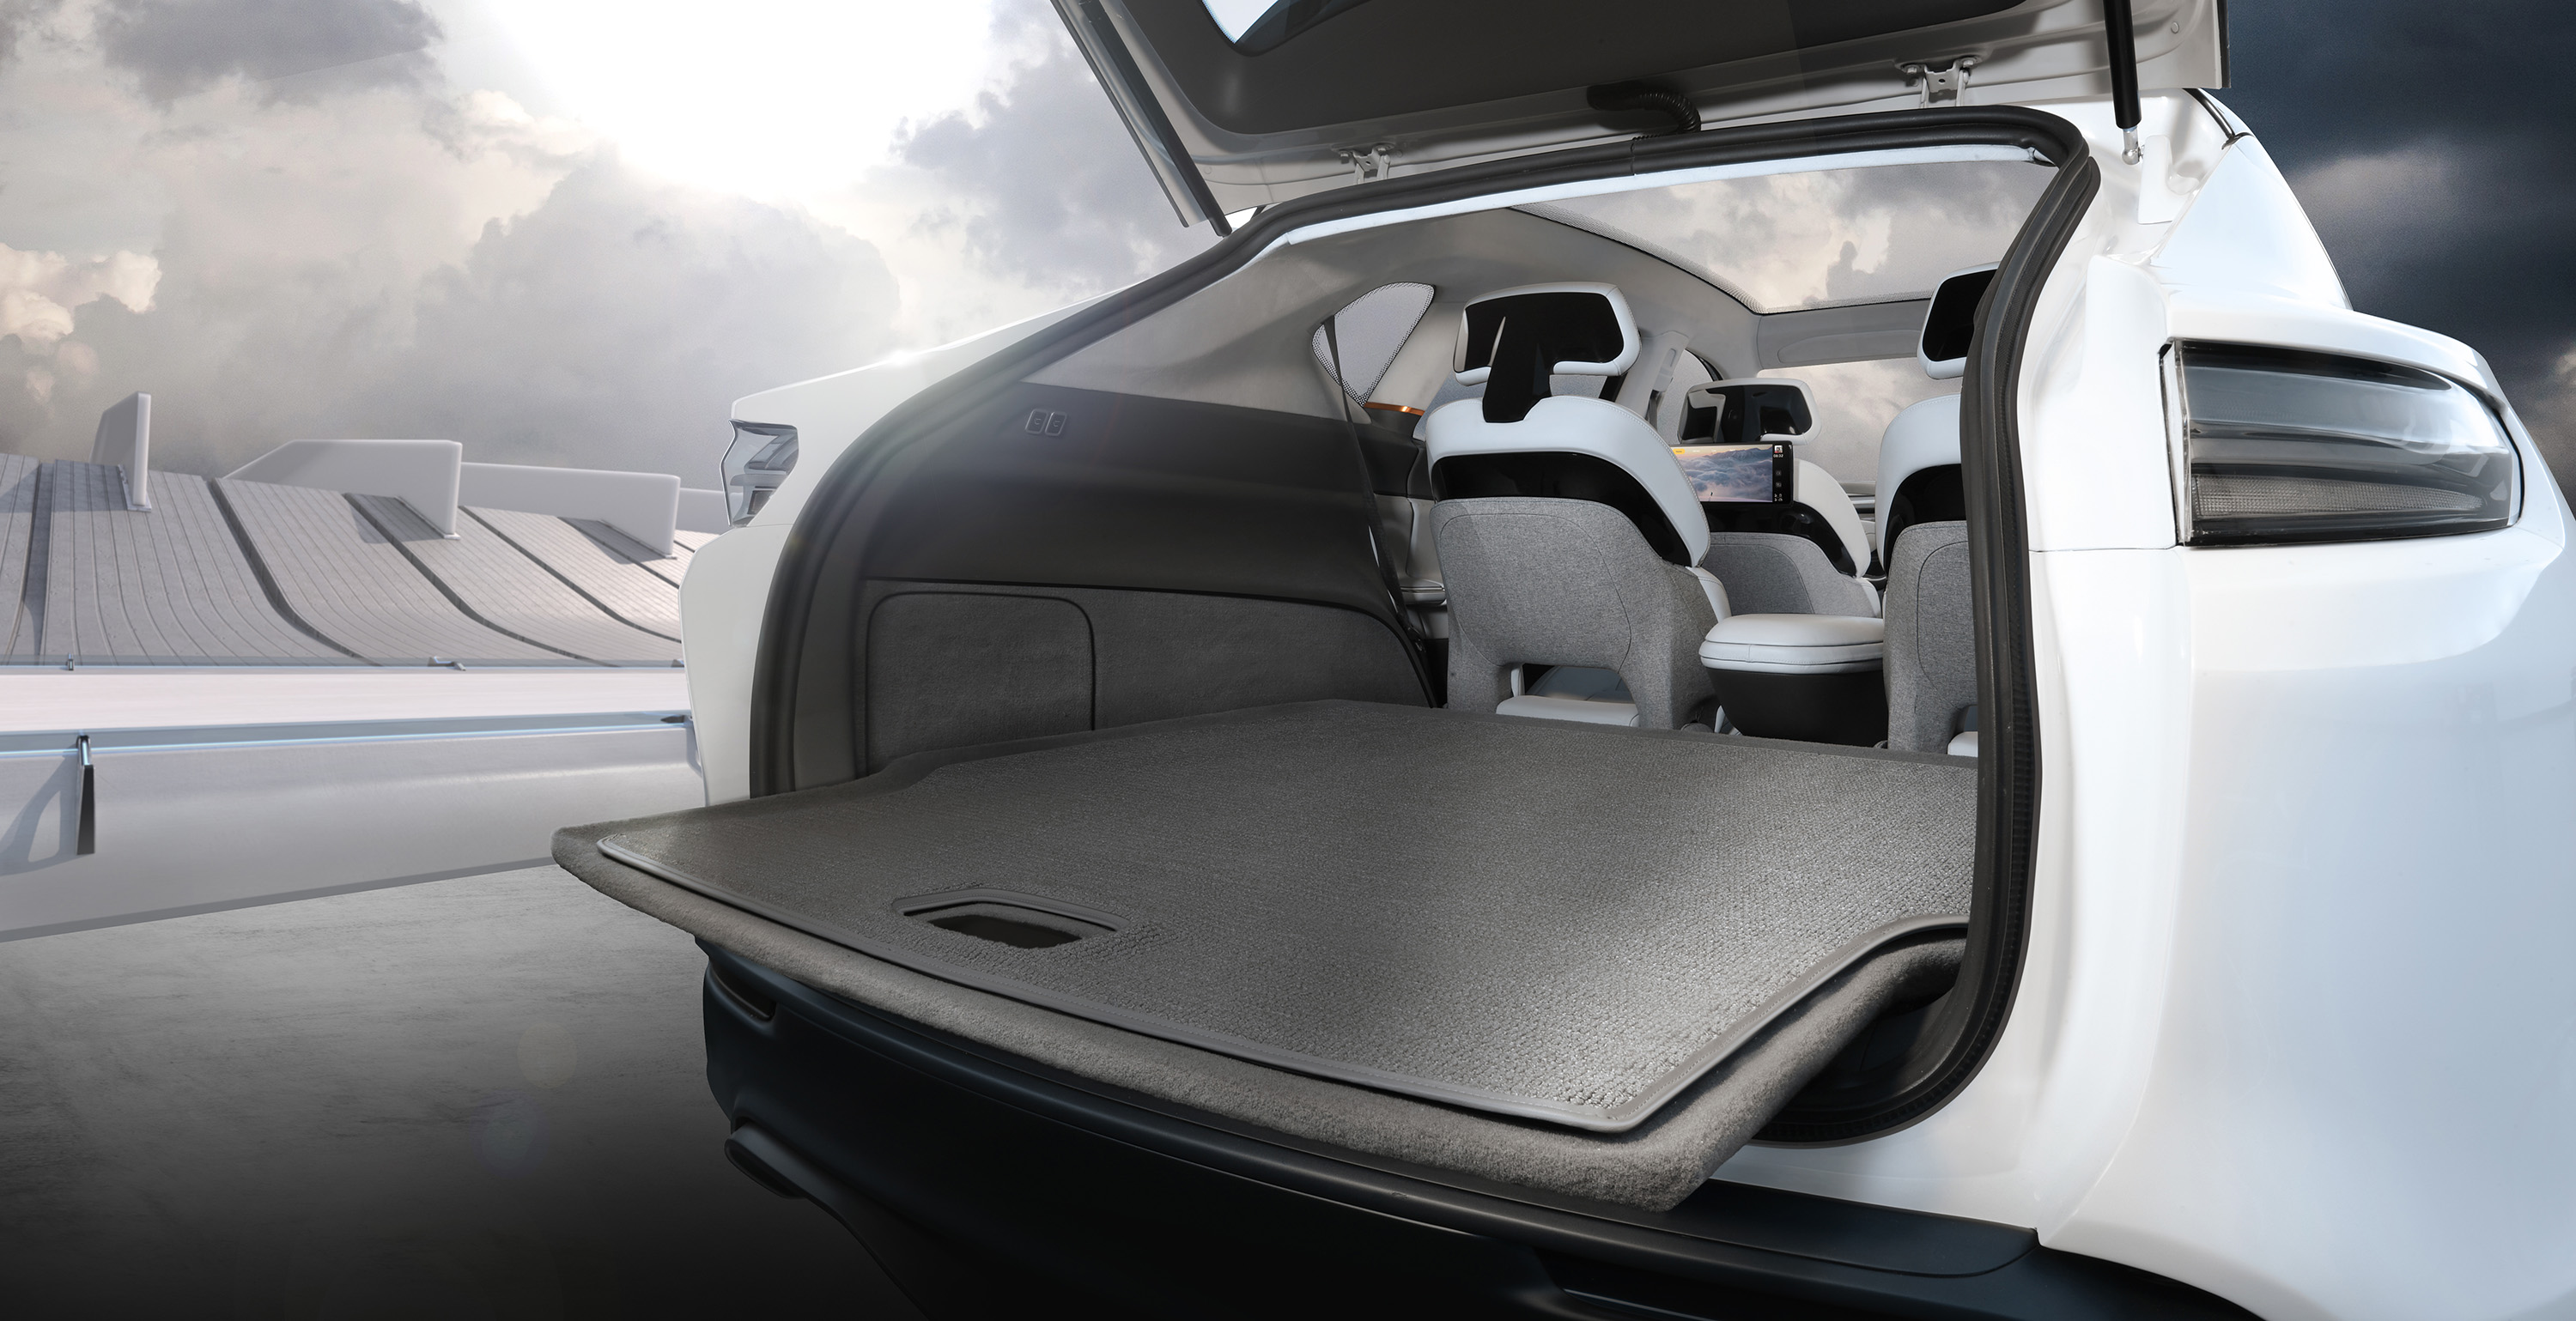 Chrysler Airflow concept load floor.jpg